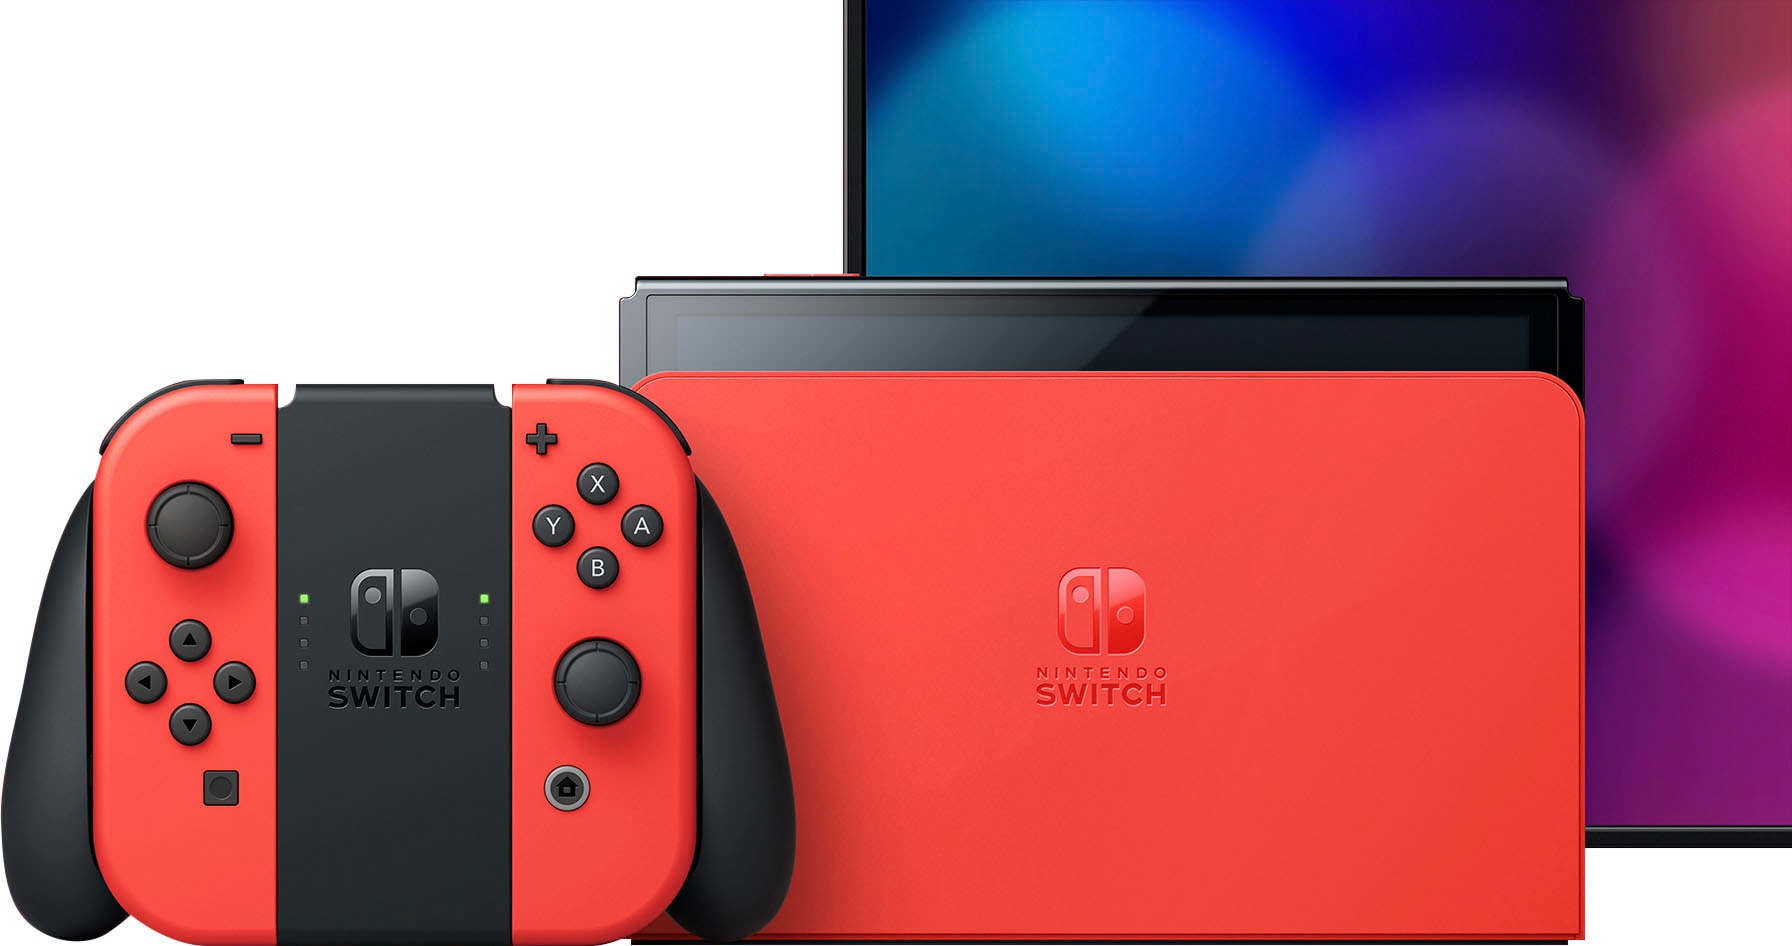 Nintendo Switch Spielekonsole »OLED Modell Mario-Edition« auf Raten  bestellen